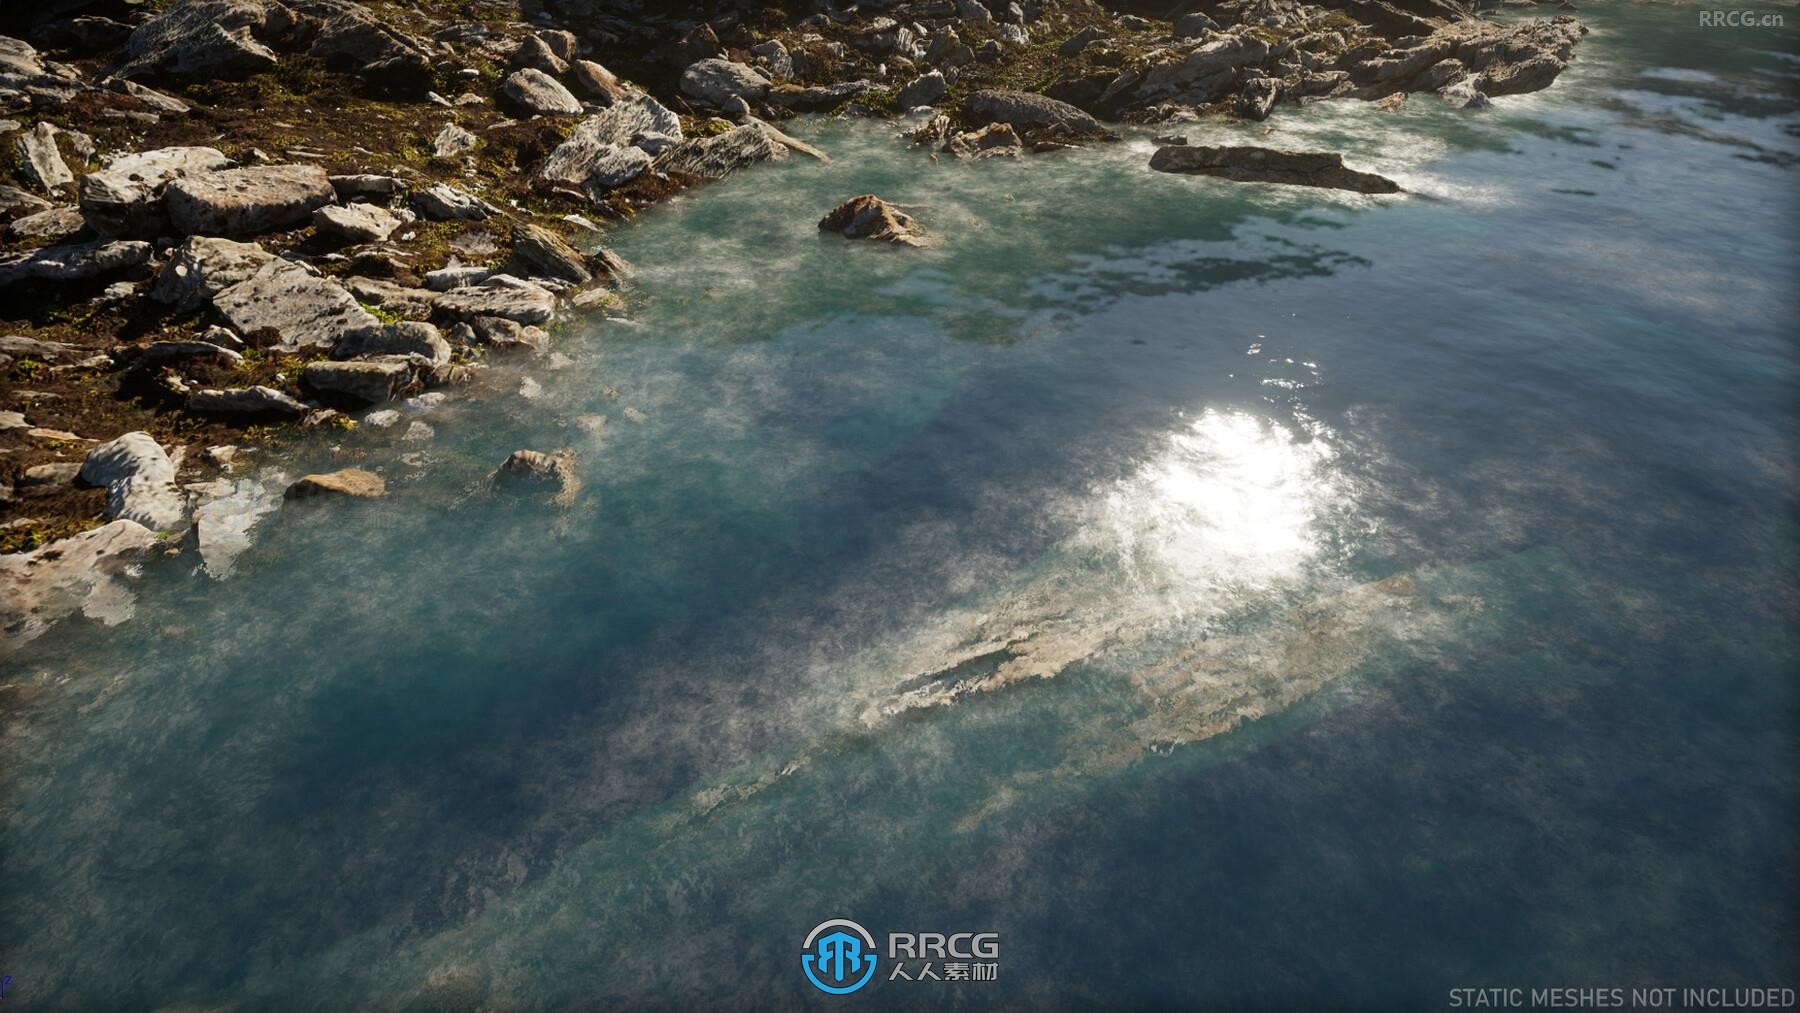 UE5虚幻引擎着色器湖泊与河流制作技术视频教程